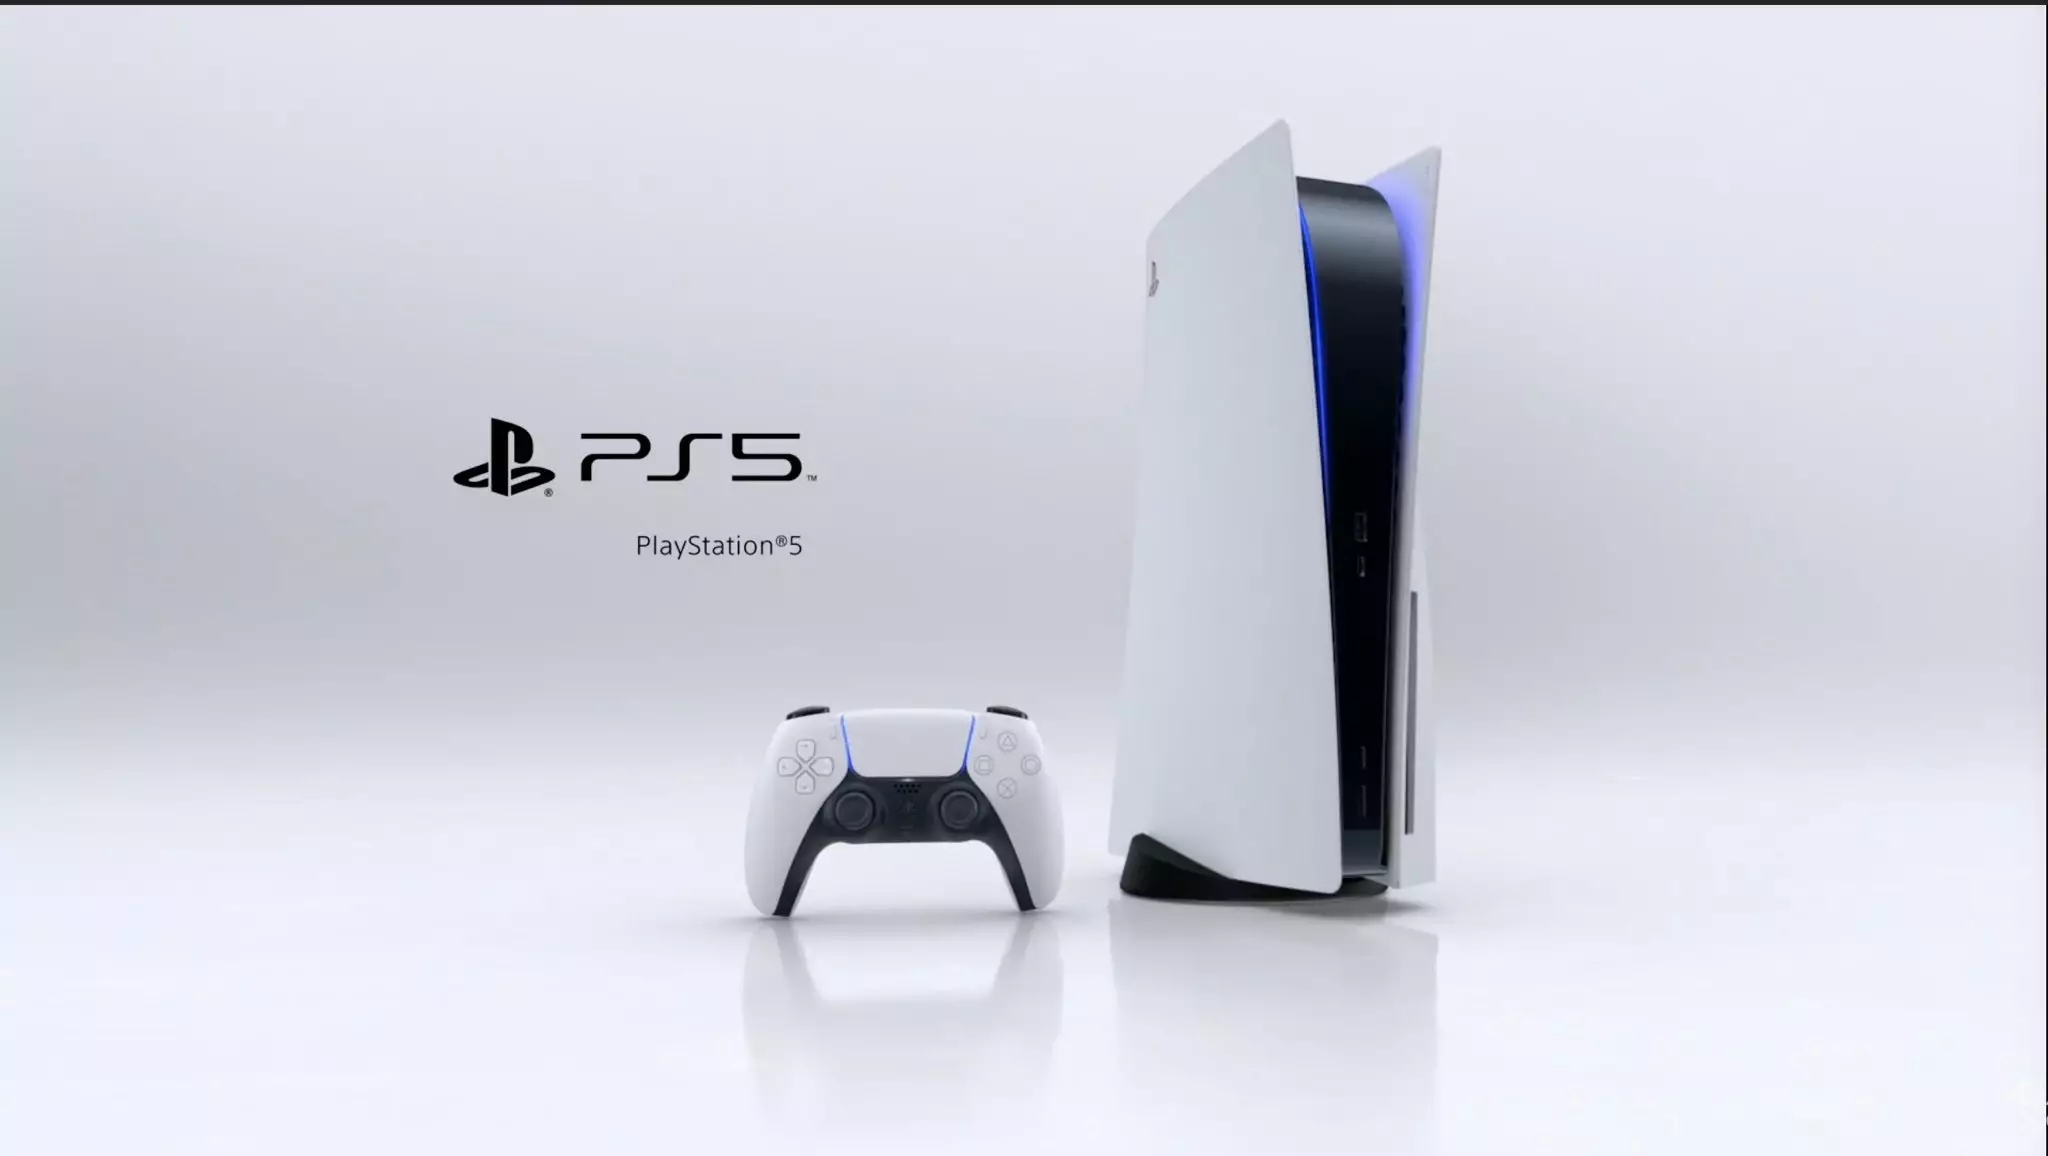 Внешний вид PlayStation 5 получился спорным